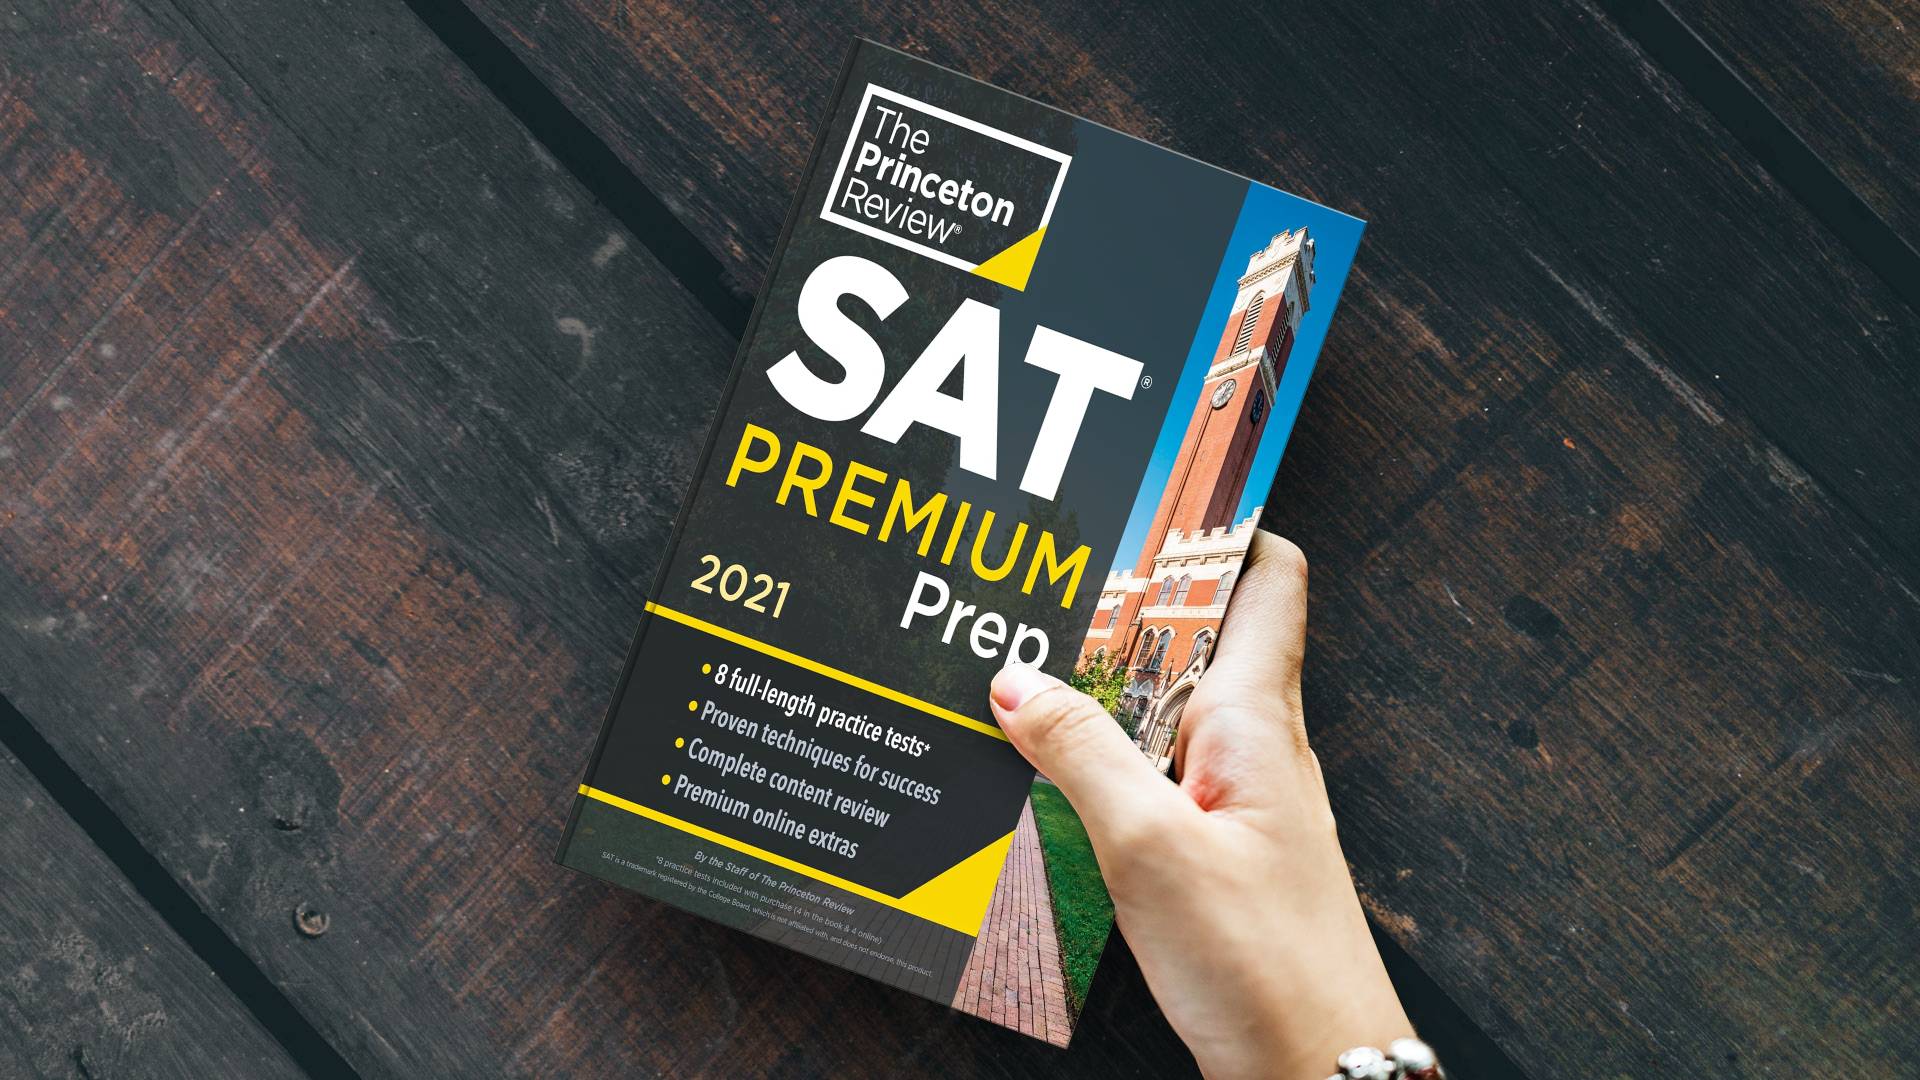 کتاب Princeton Review SAT Prep 2021 پرینستون ریویو اس ای تی پریپ